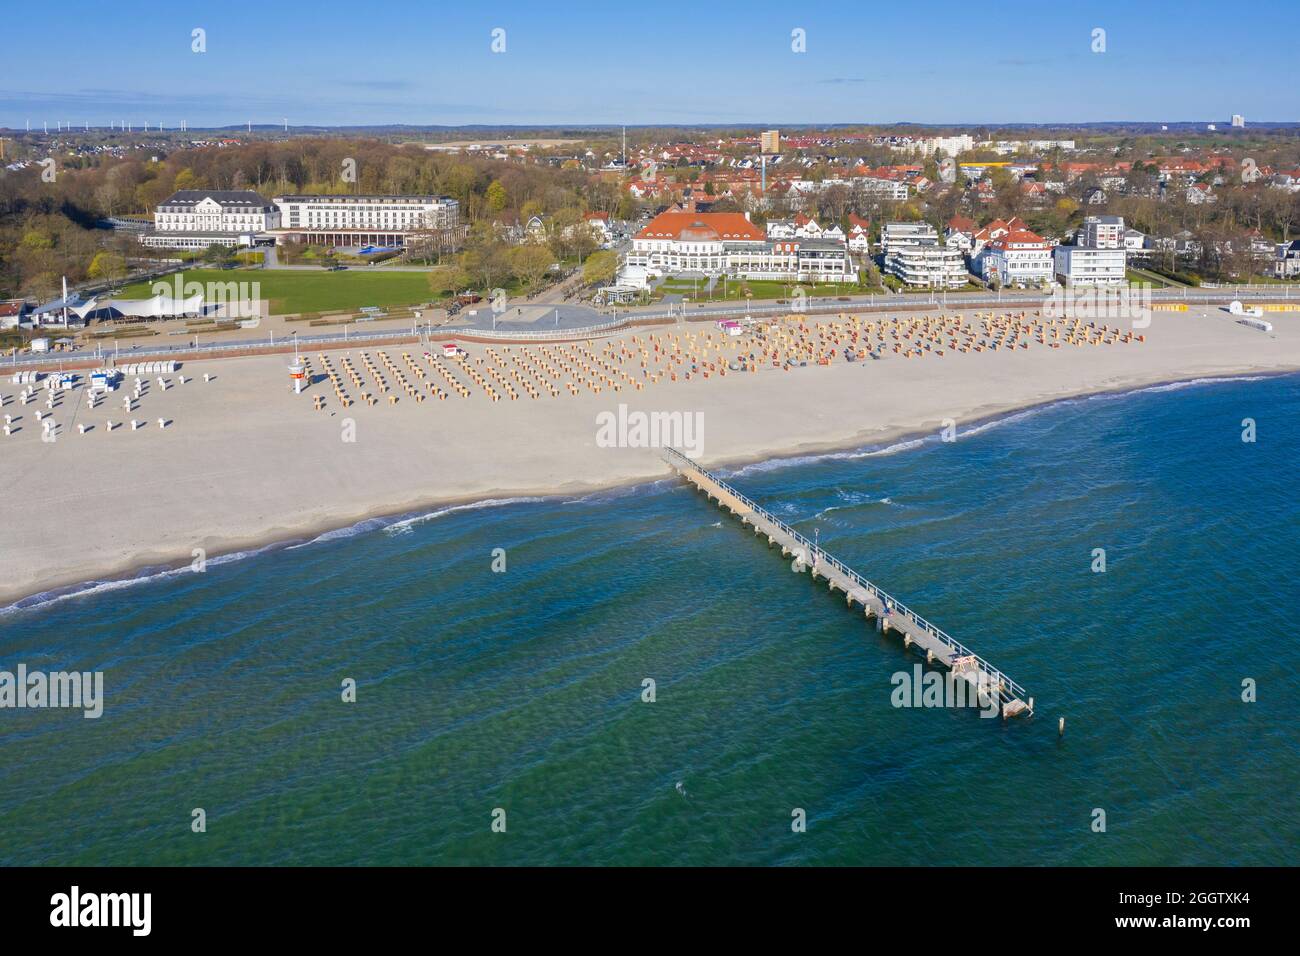 Vista aérea sobre hoteles, embarcadero y sillas de playa de mimbre techadas en la localidad costera de Travemünde, Hanseatic City of Lübeck, Schleswig-Holstein, Alemania Foto de stock